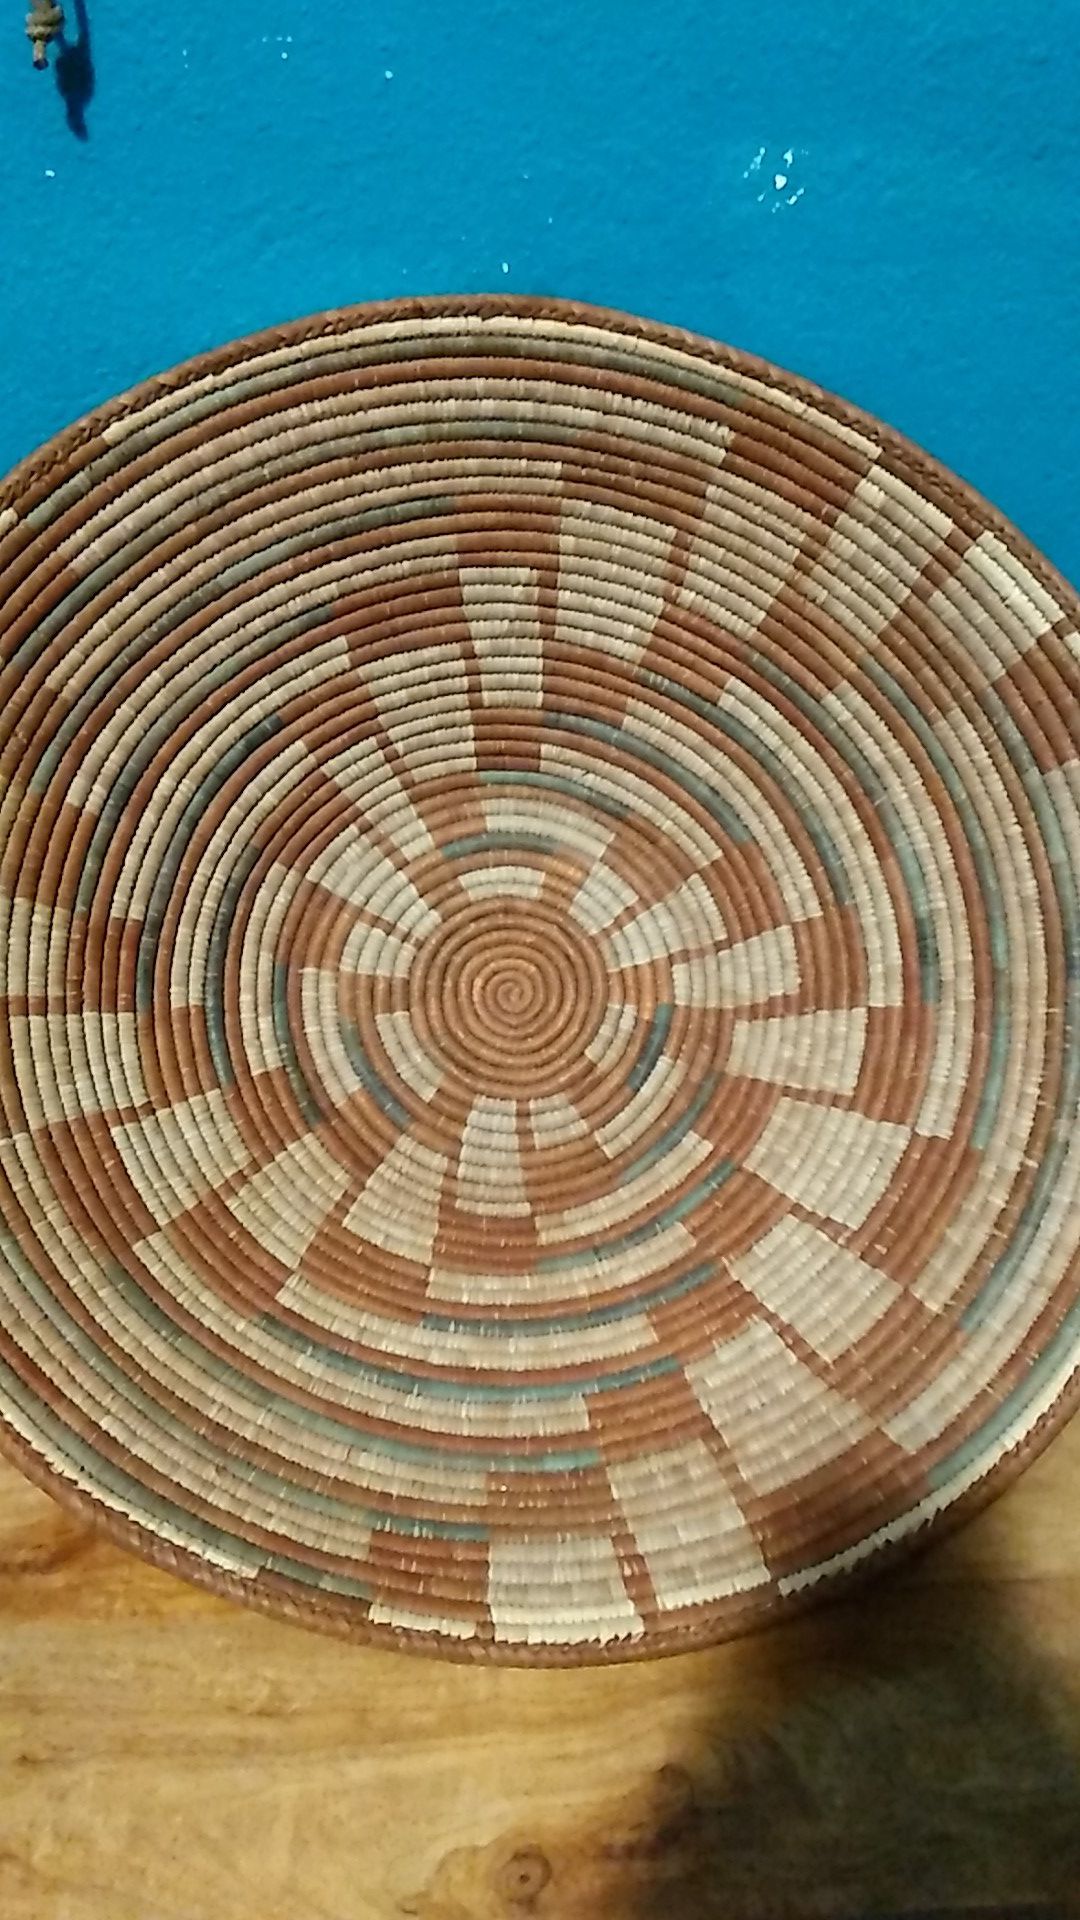 Maybe Navajo basket